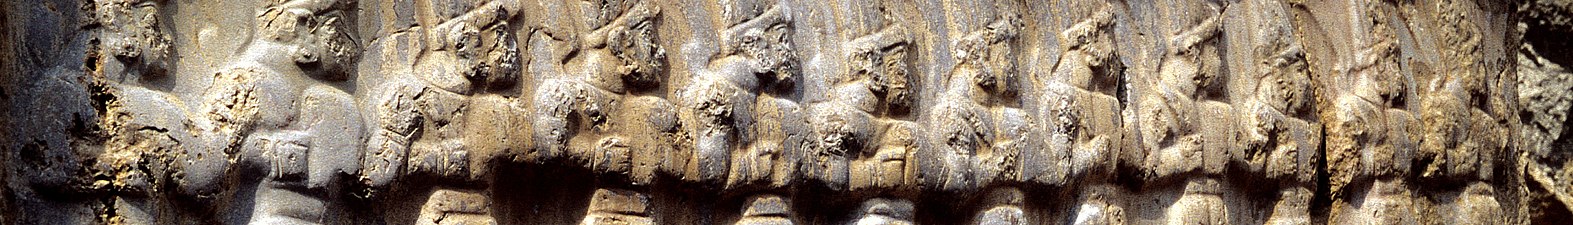 Yazılıkaya'da on iki yer tanrısının resmedildiği kabartma